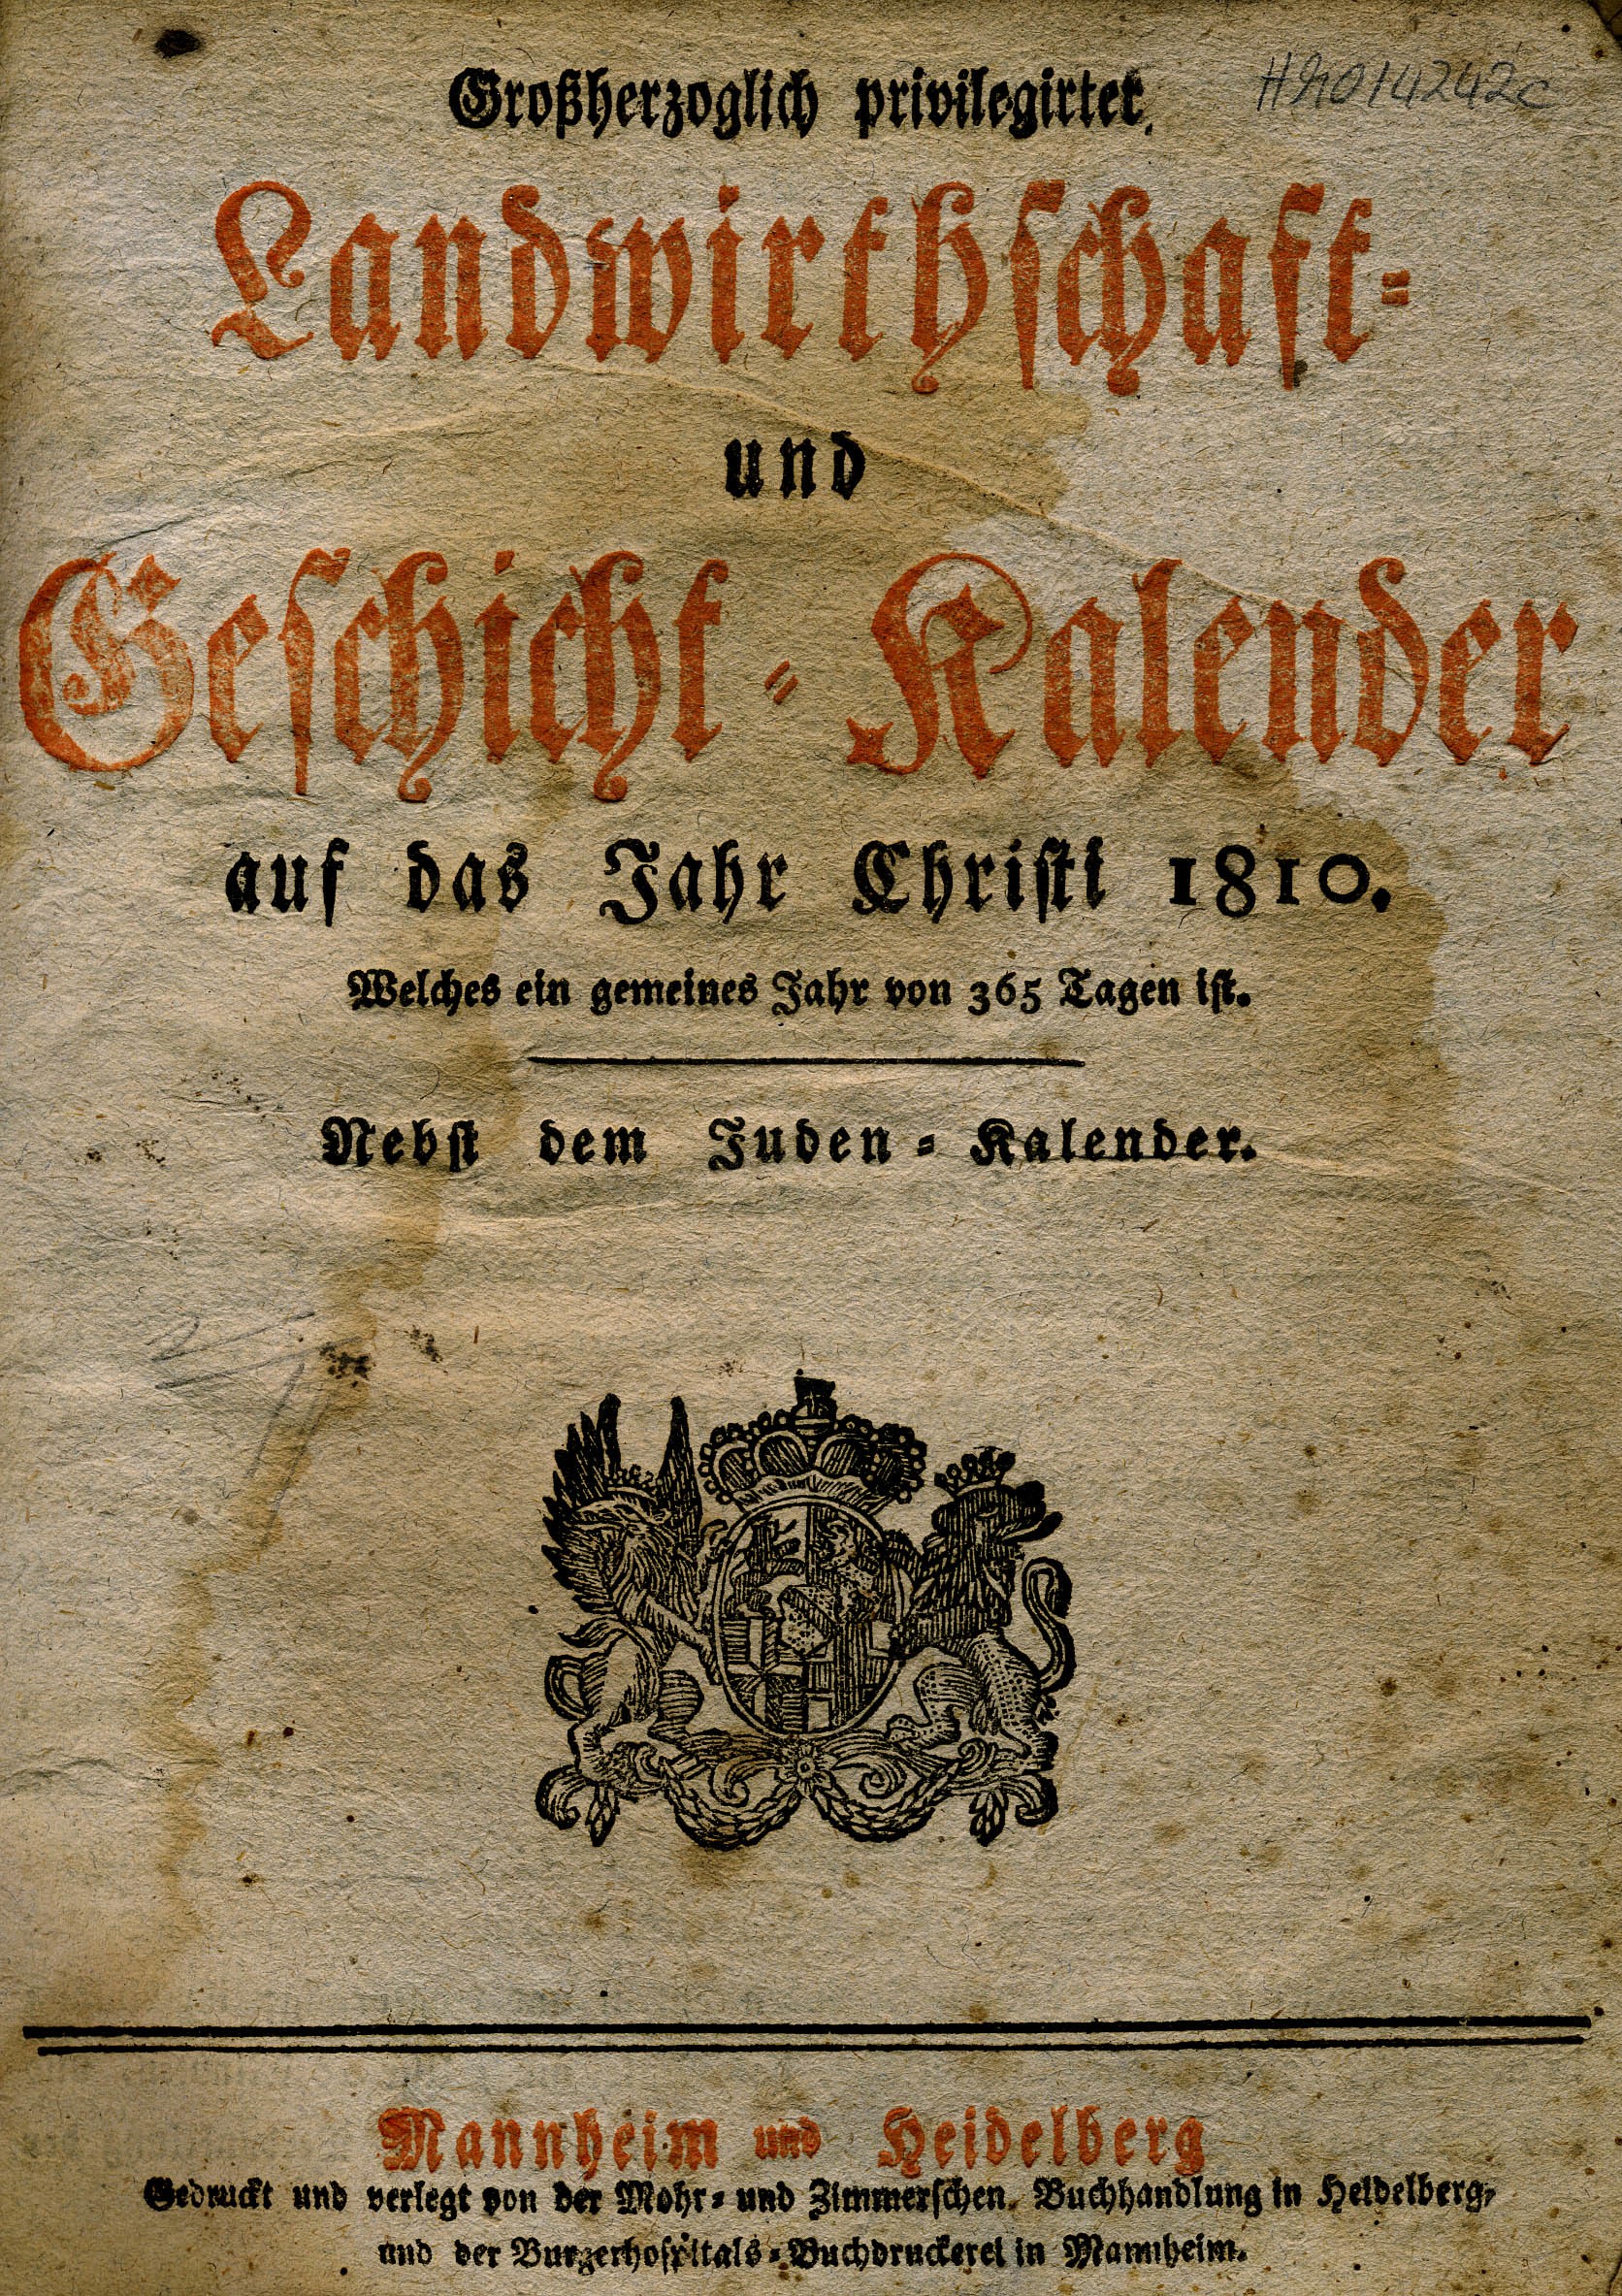 Landwirtschafts –und Geschichtskalender für das Jahr 1810 (Mannheim und Heidelberg) (Historisches Museum der Pfalz, Speyer CC BY)